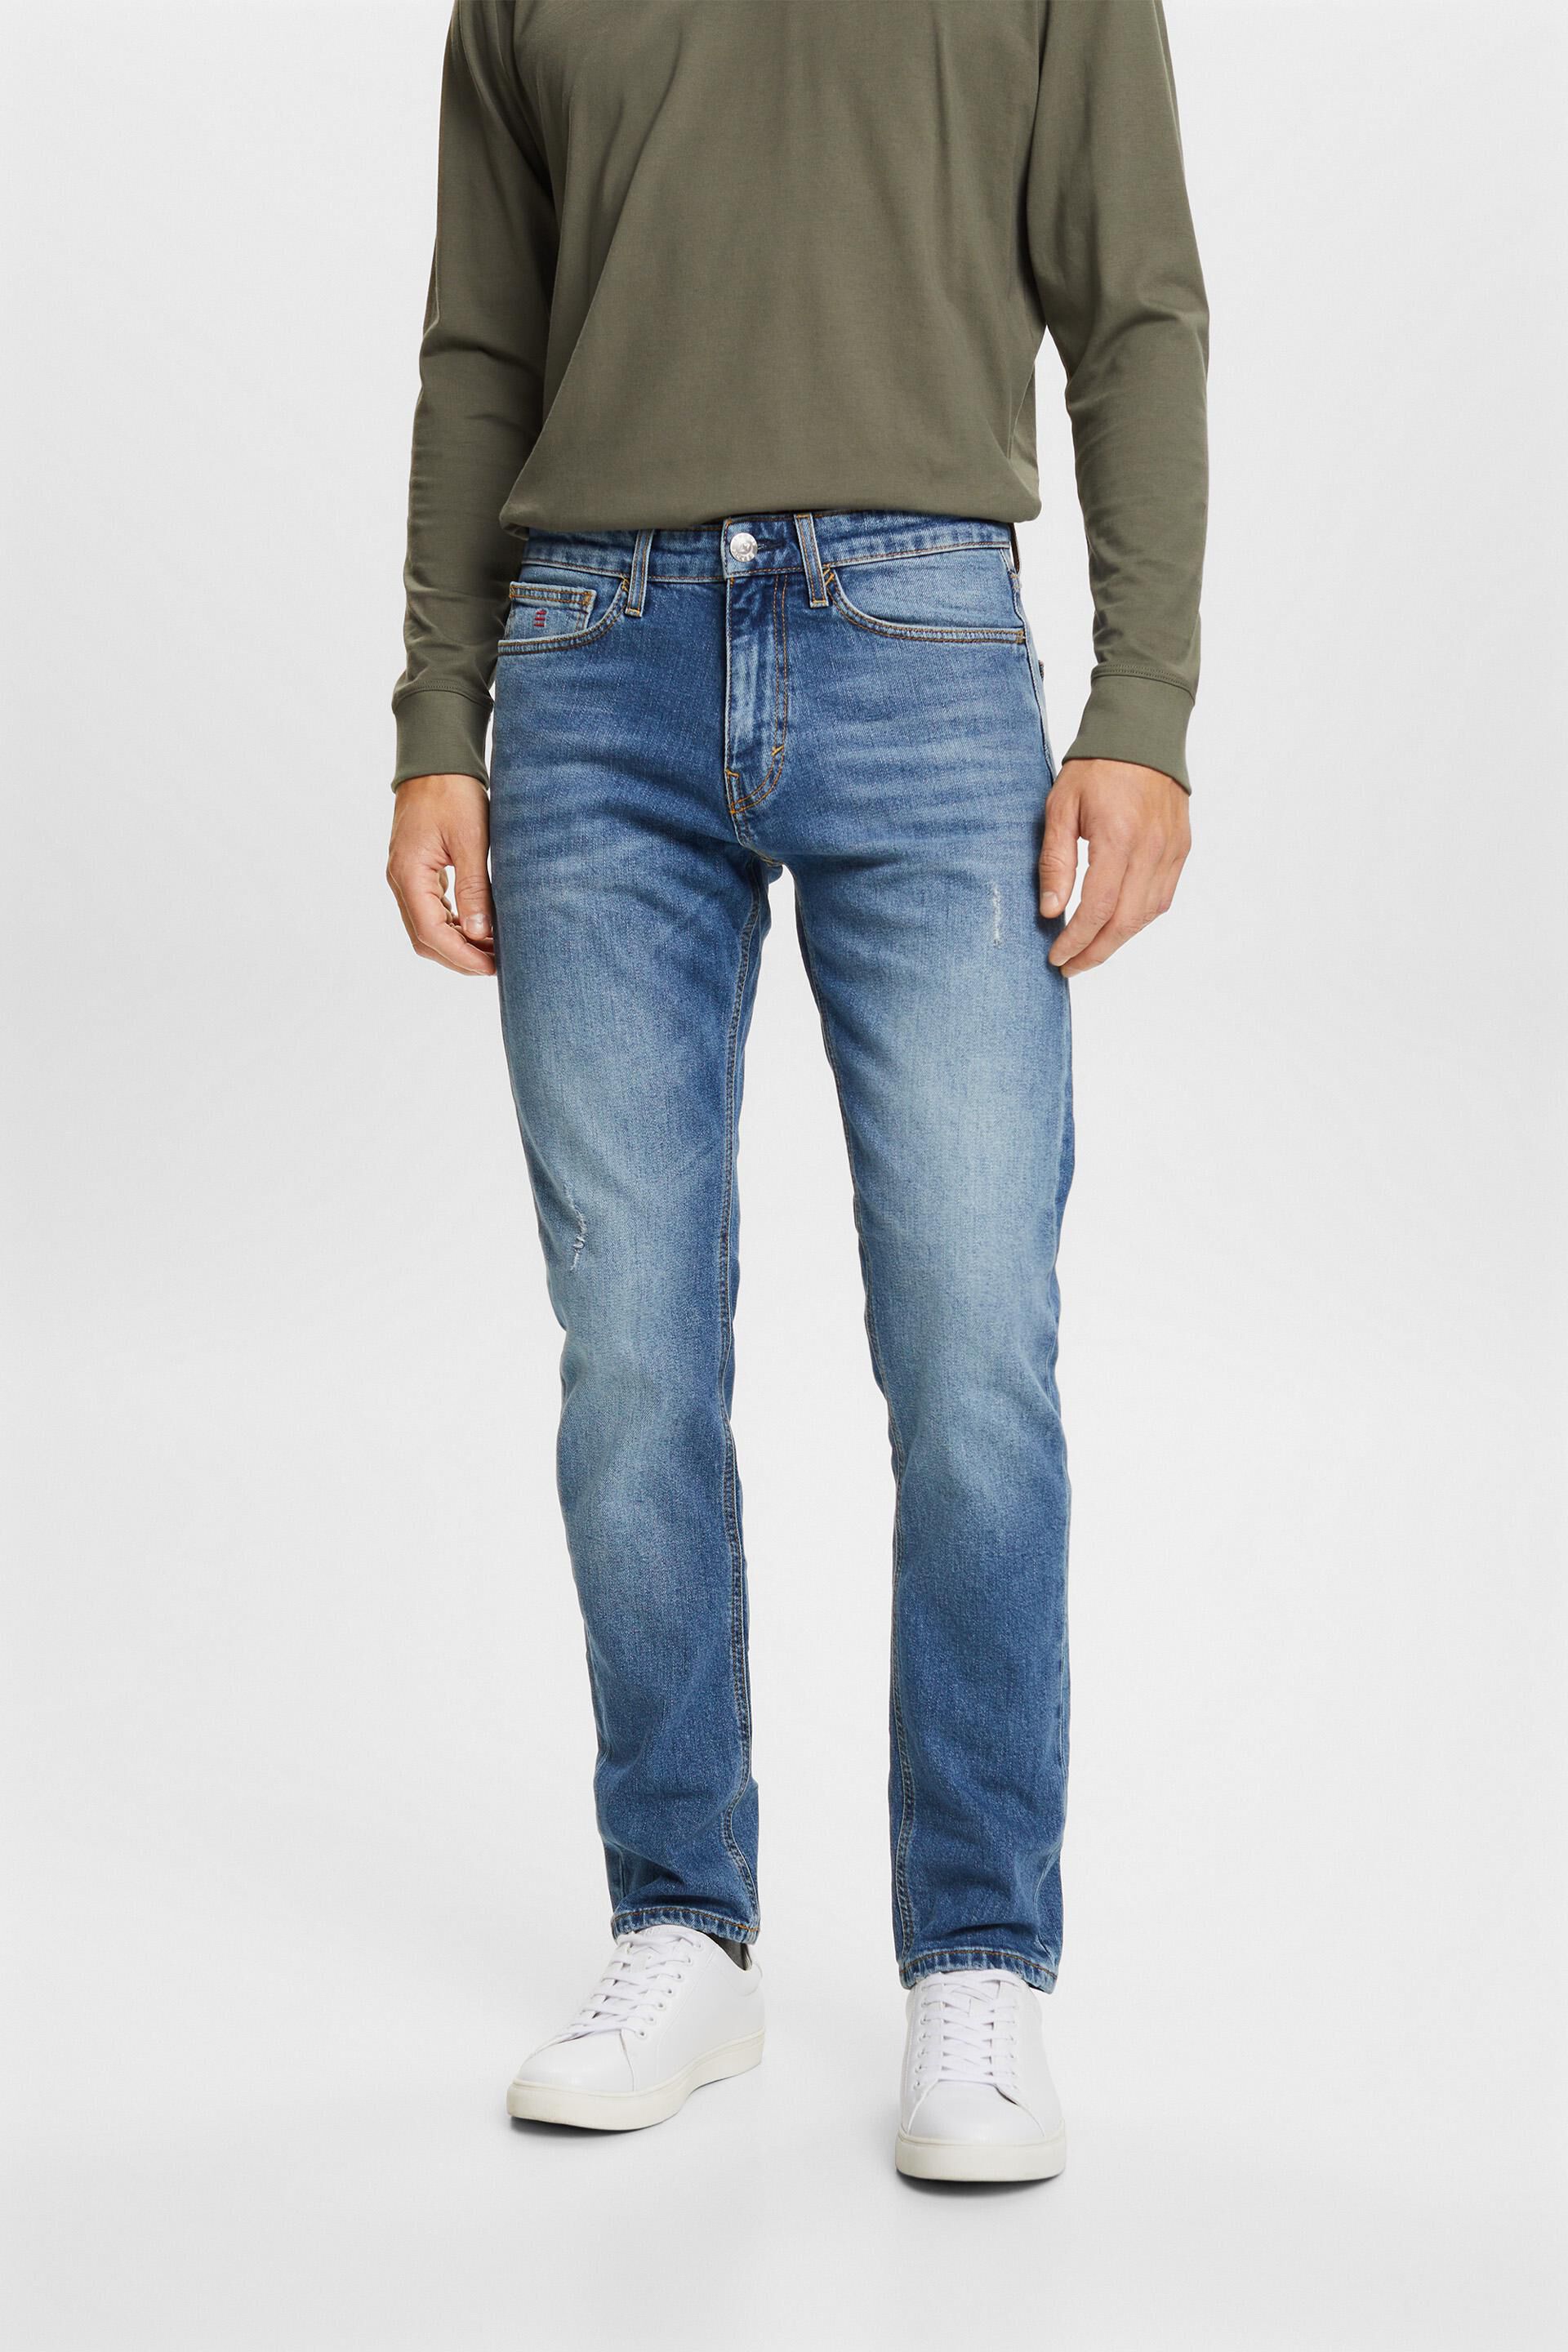 Esprit stretch jeans fit Premium slim